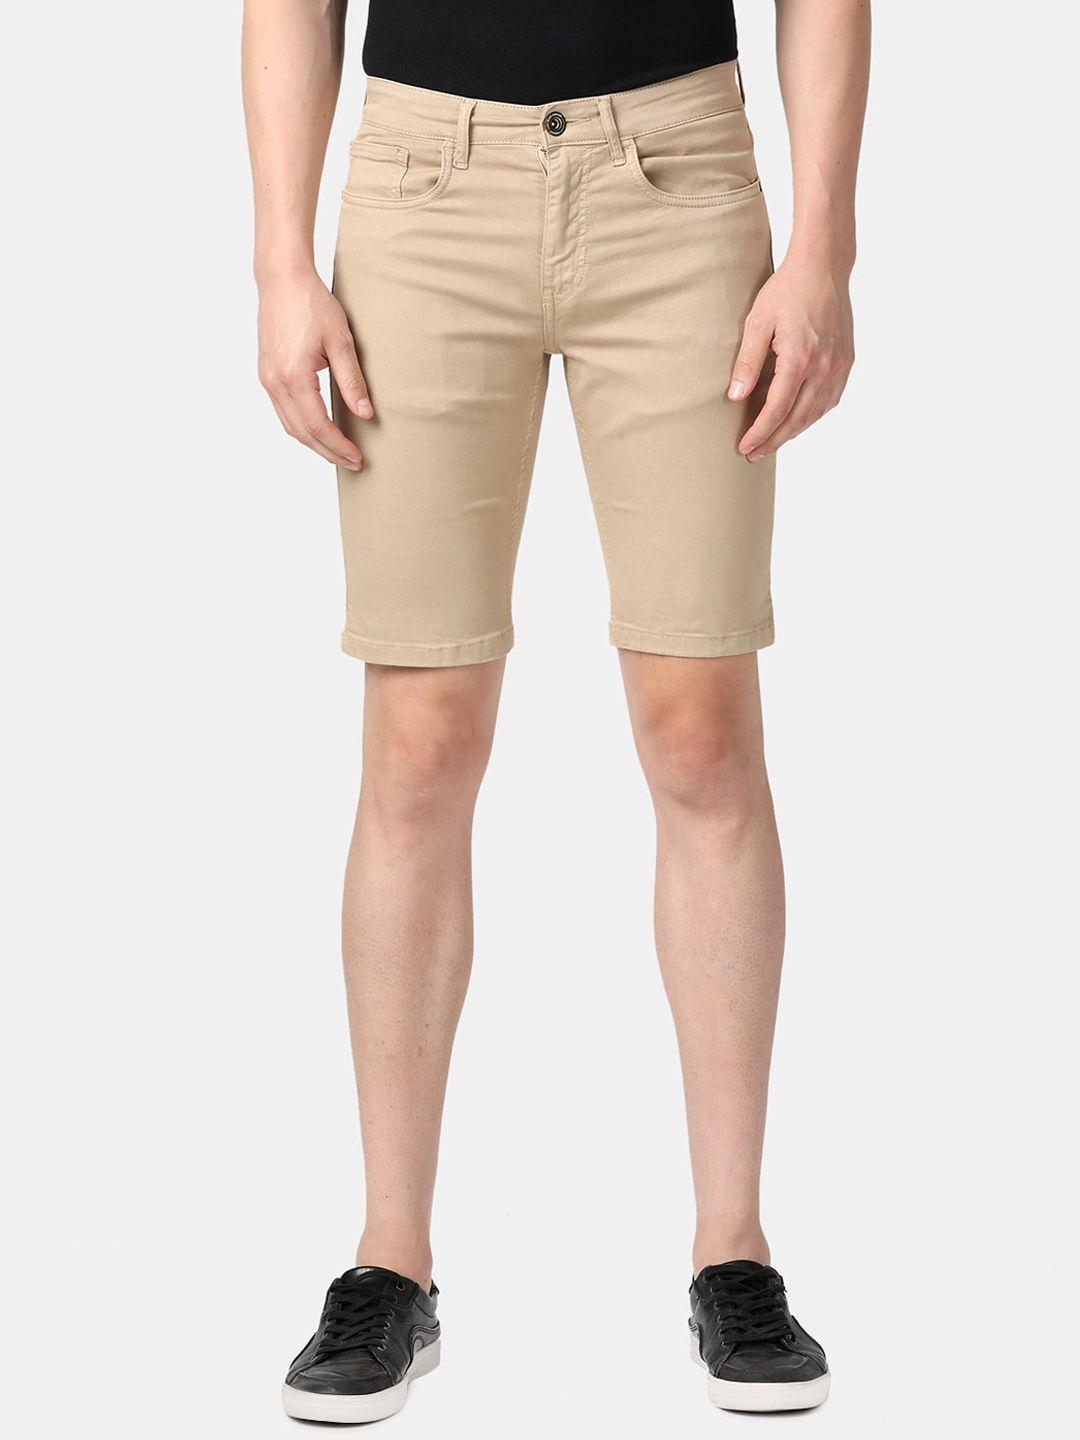 llak-jeans-men-khaki-slim-fit-denim-shorts